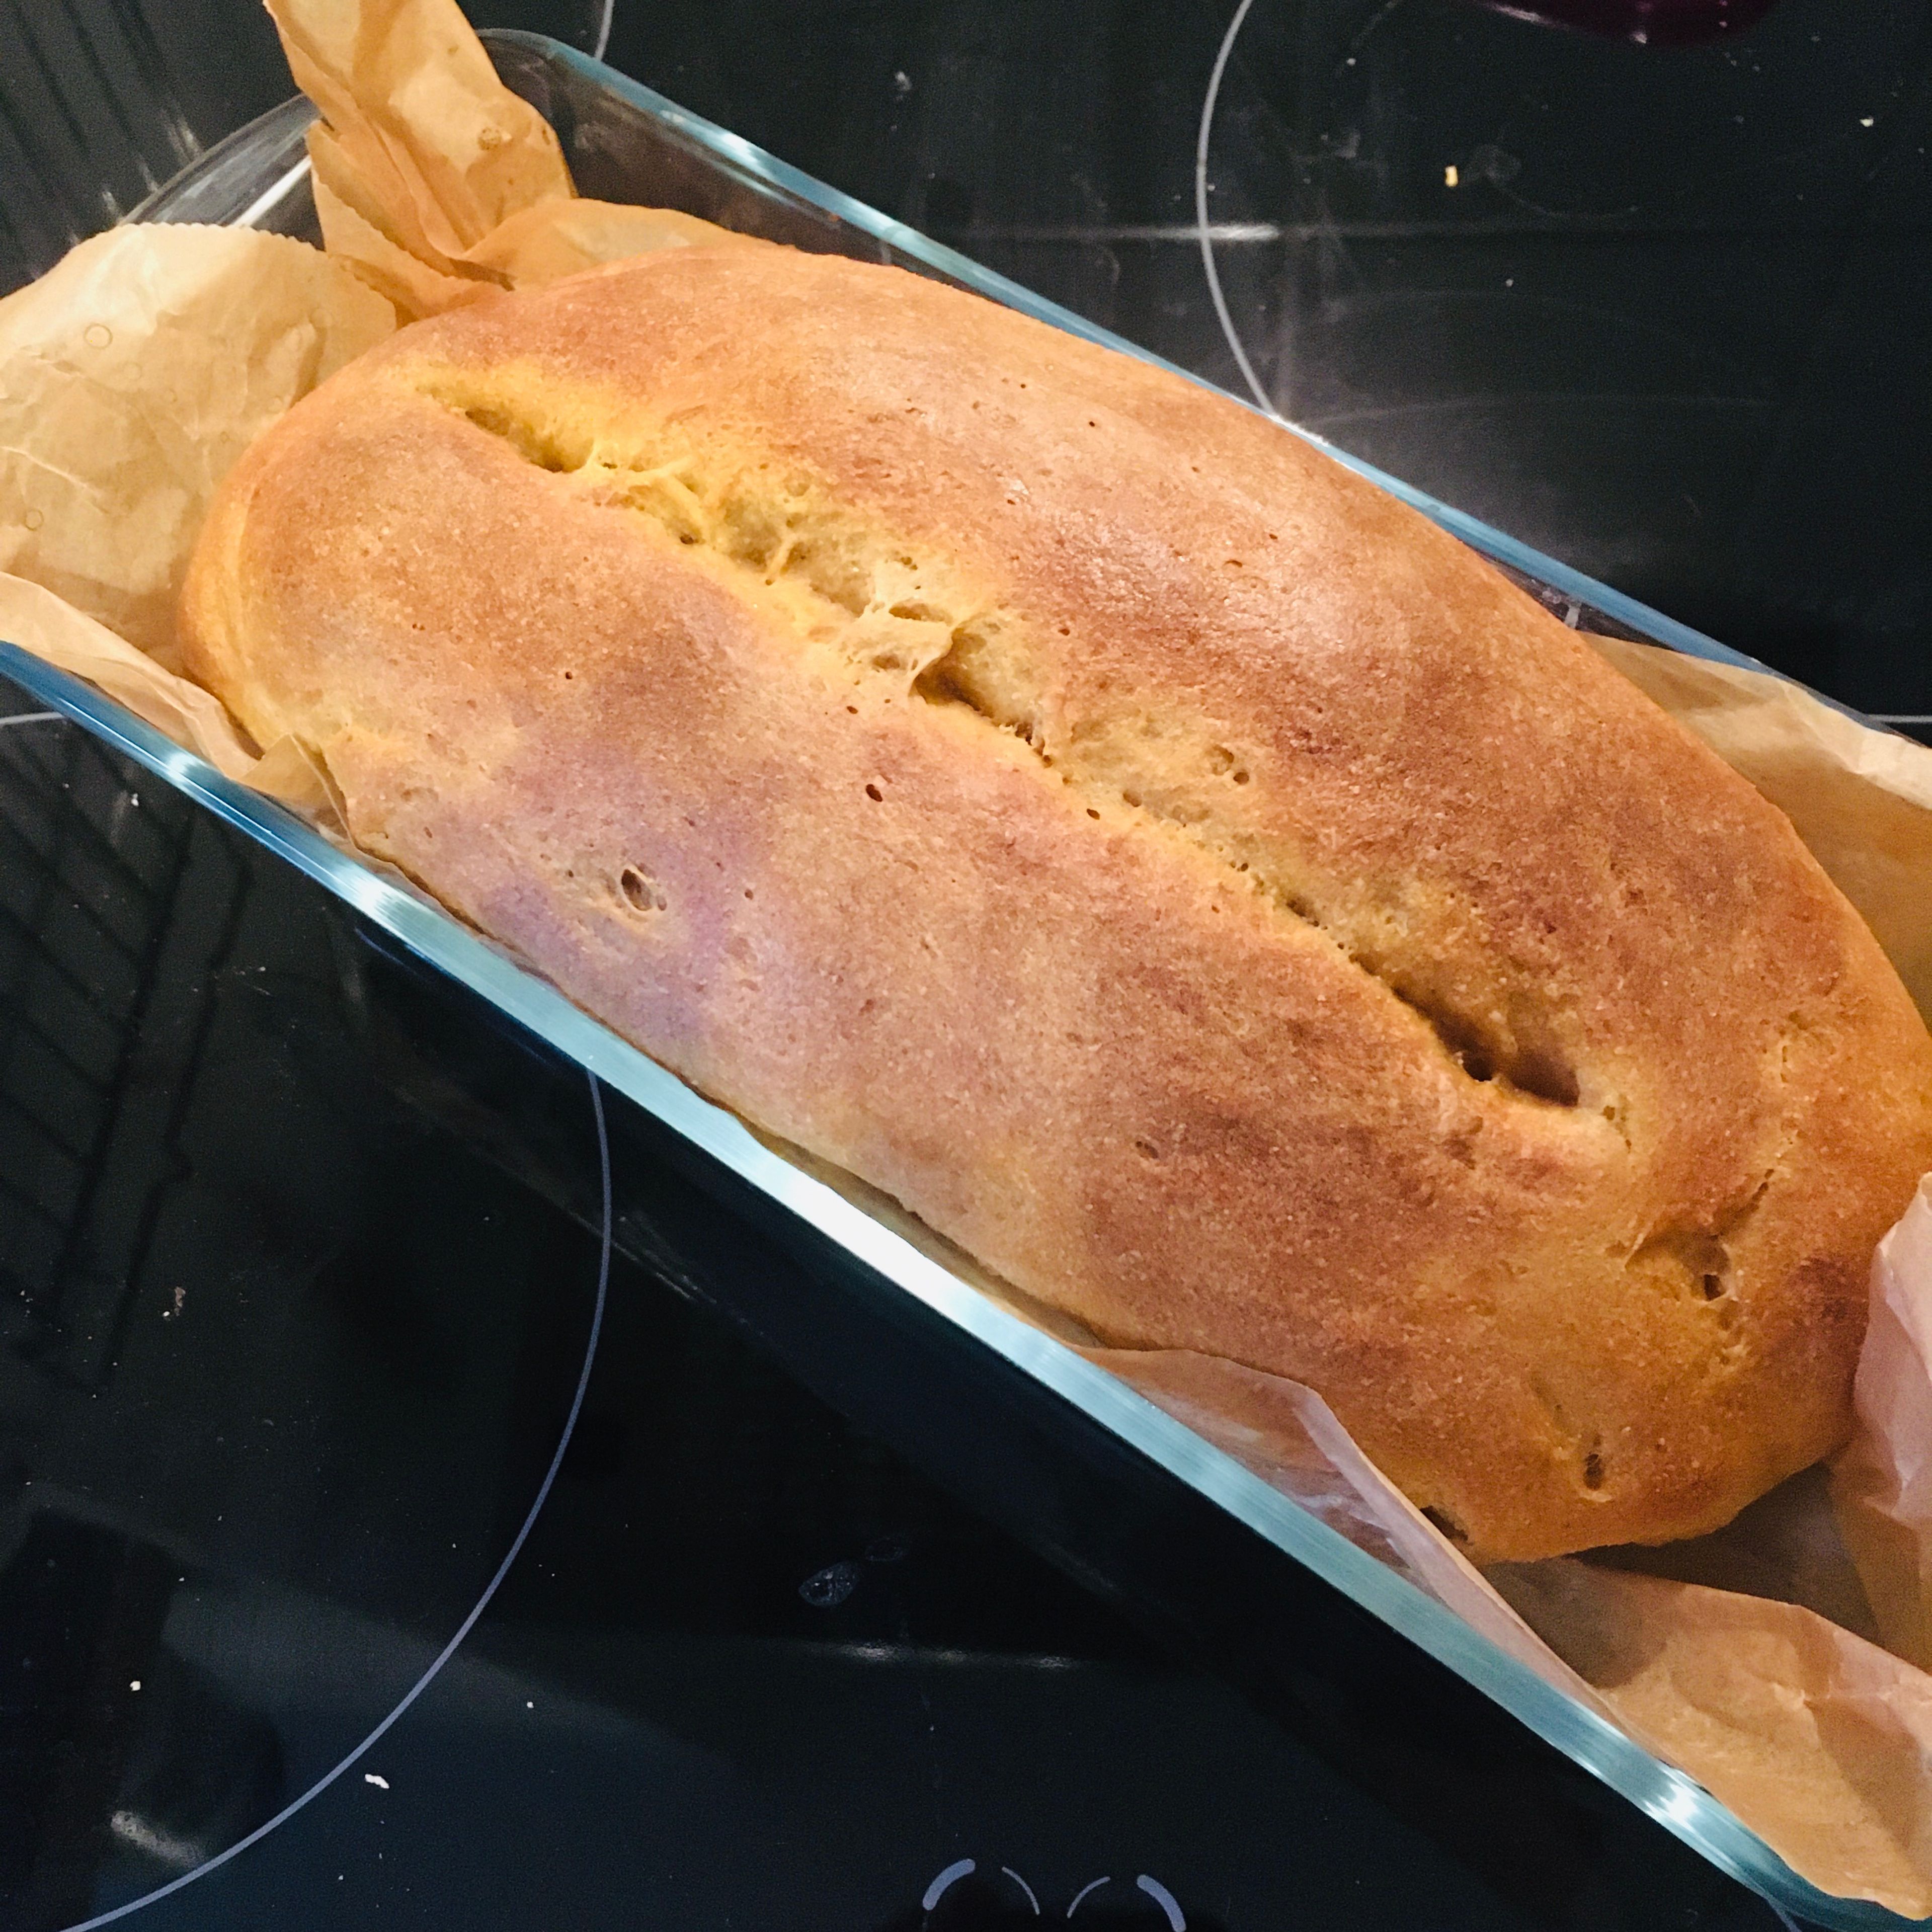 Brot aus dem Backofen nehmen und abkühlen lassen, bevor es aus der Form genommen wird. Guten Appetit!